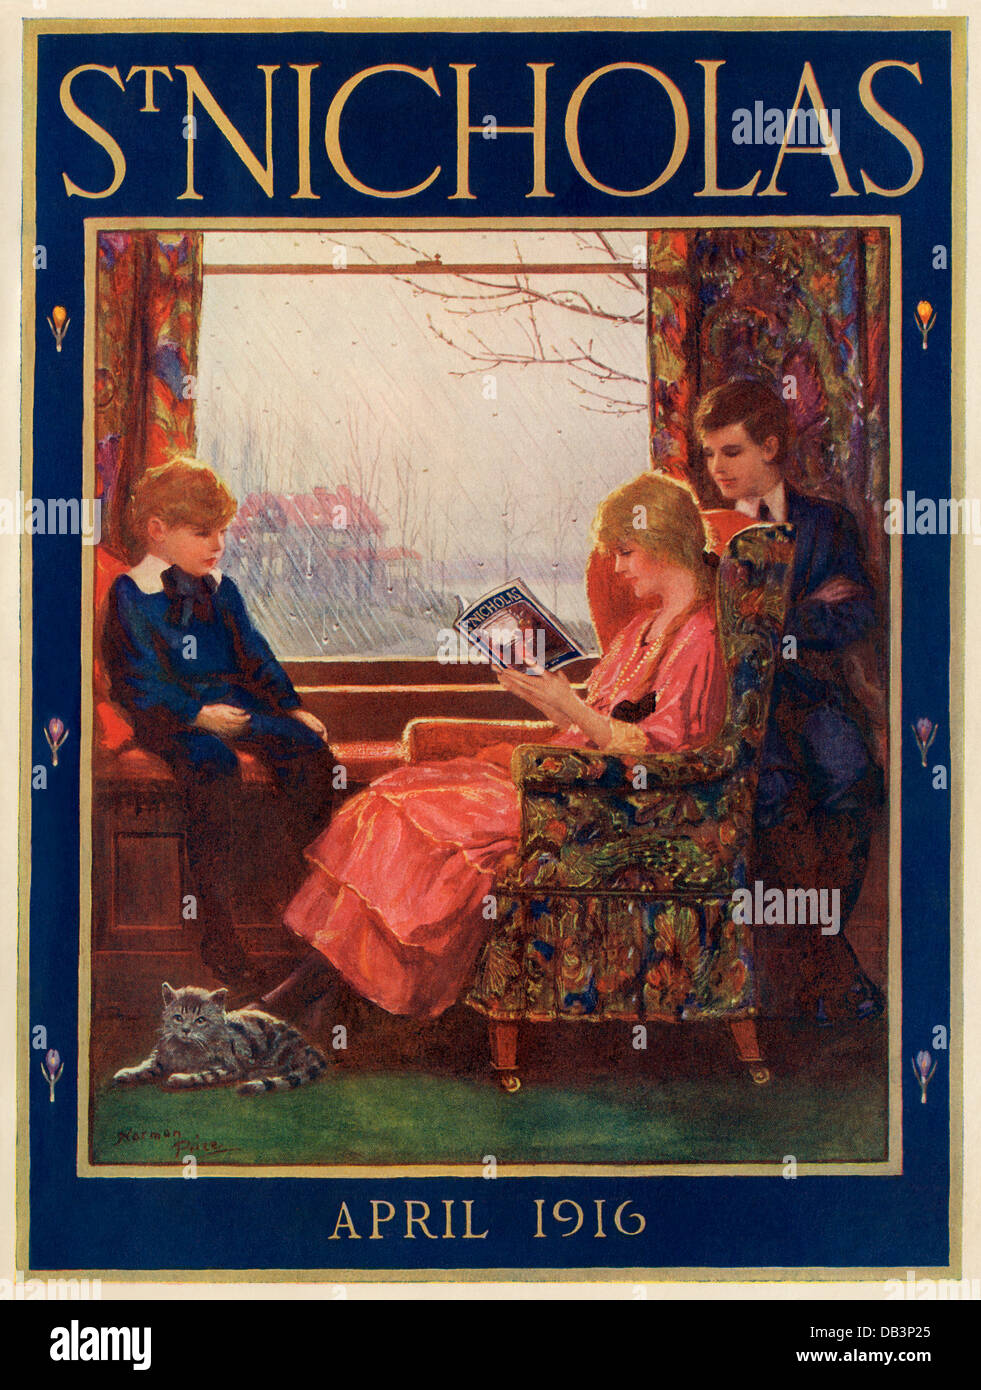 Couverture de Magazine de St Nicholas, avril 1916. Illustration de demi-teintes couleur Banque D'Images